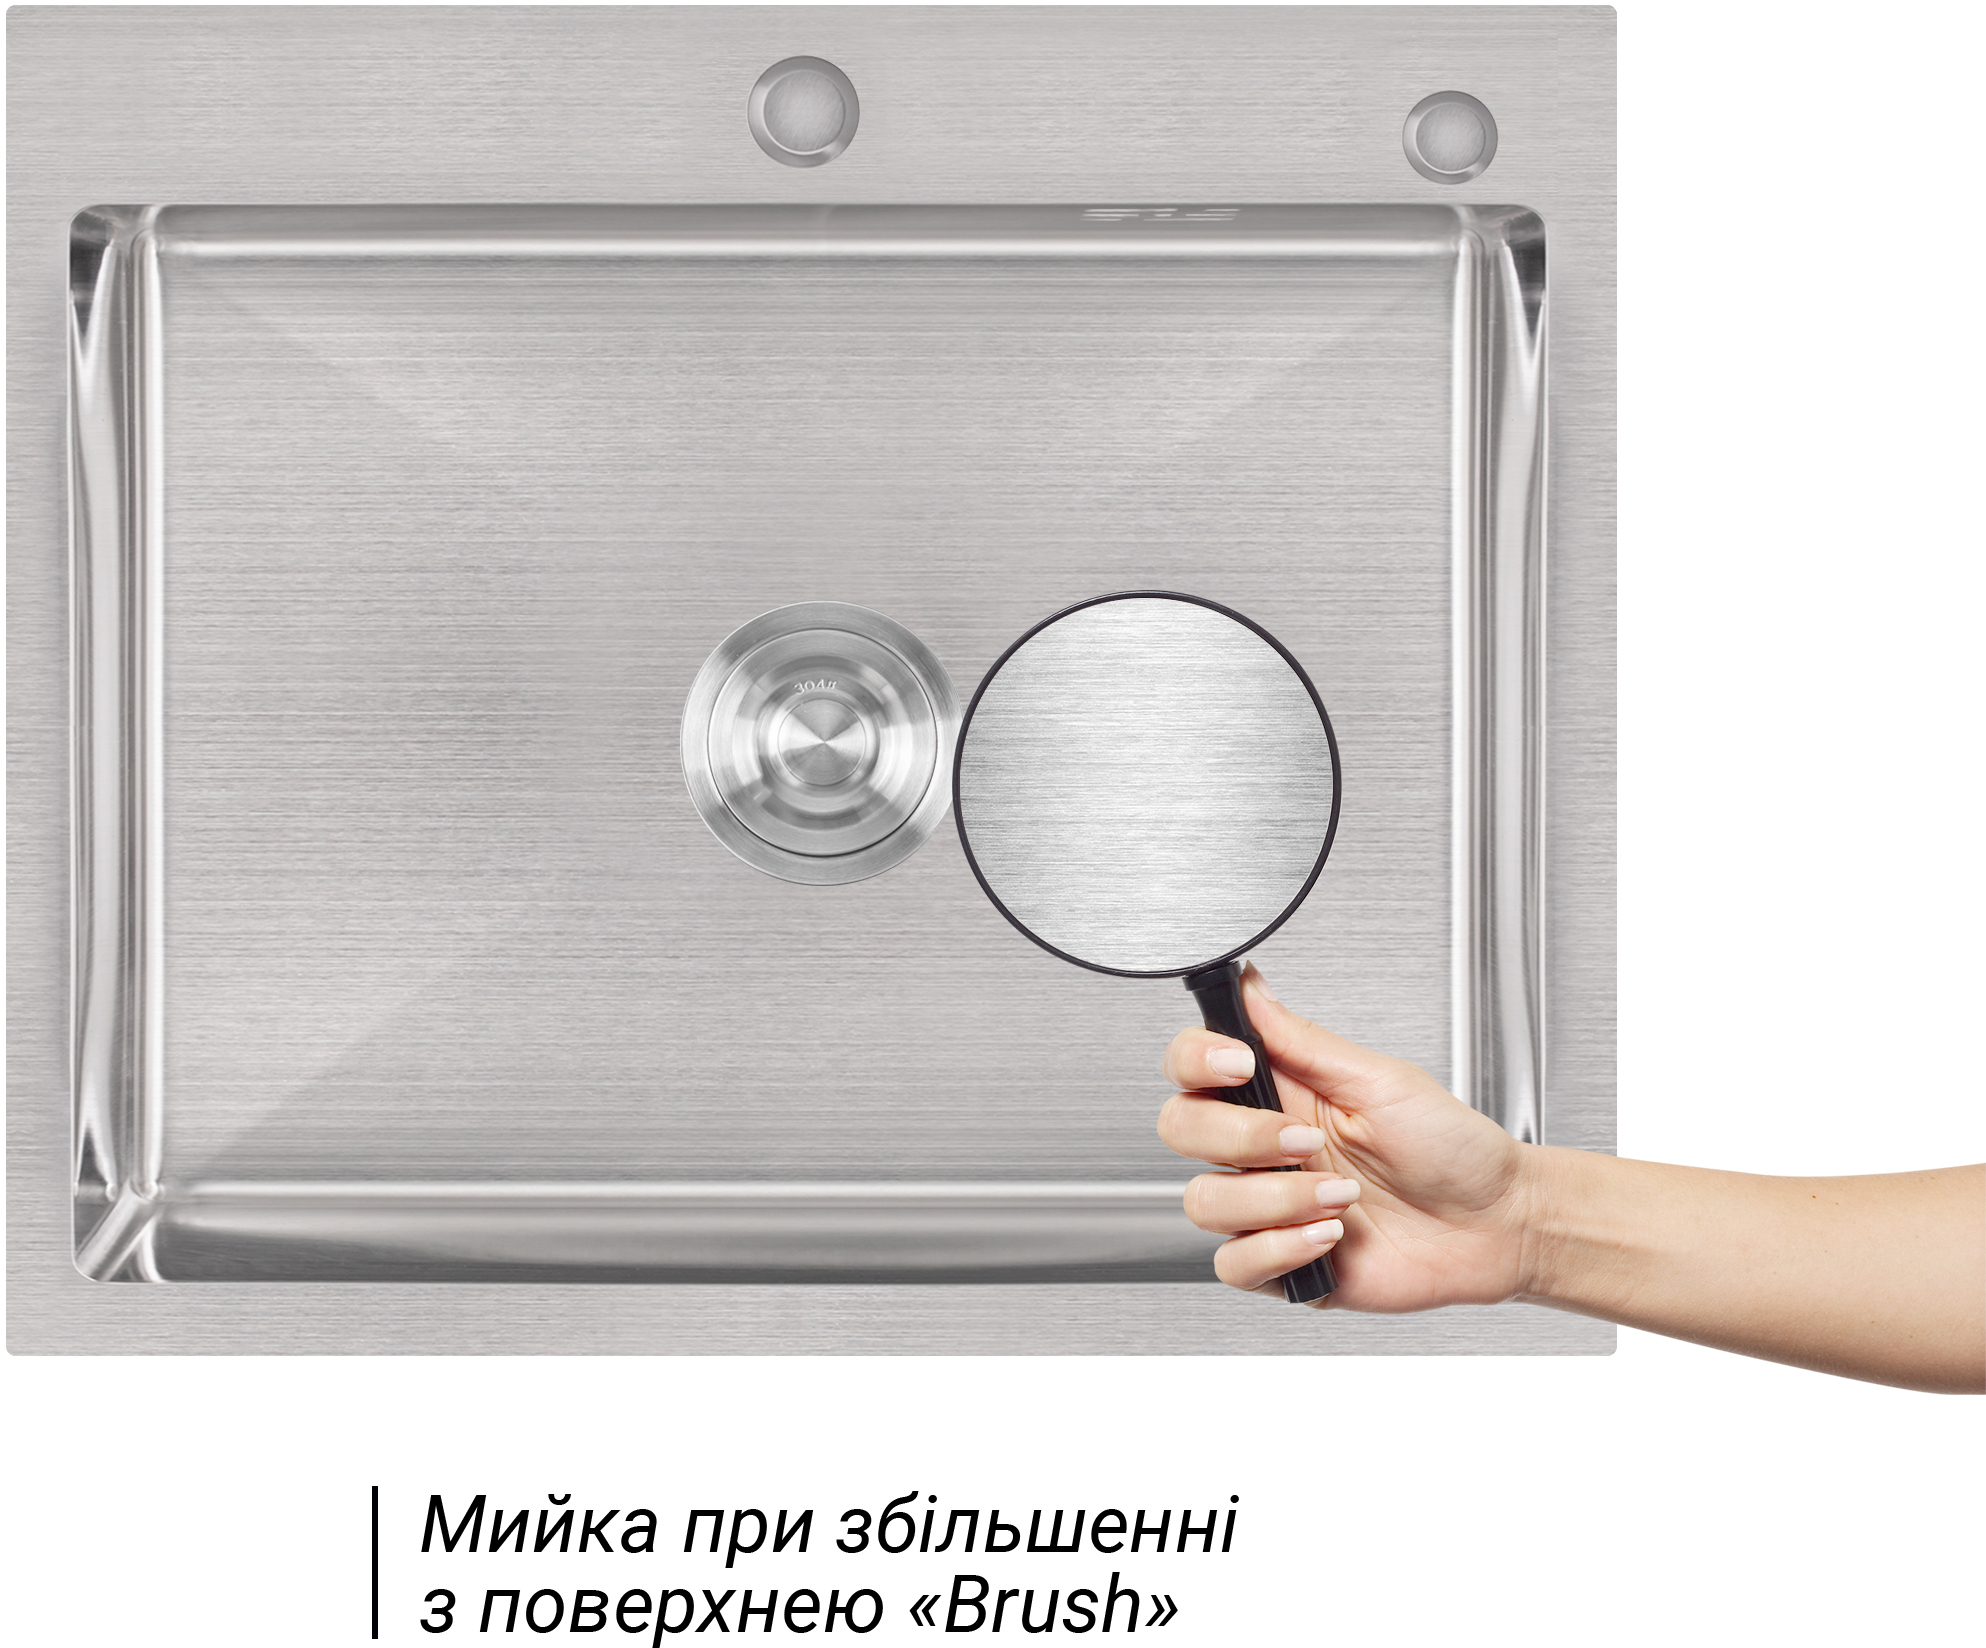 Набір 2 в 1 кухонна мийка + дозатор кухонна мийка + дозатор Lidz H6050 3.0/1.0 мм Brush ціна 3166.00 грн - фотографія 2